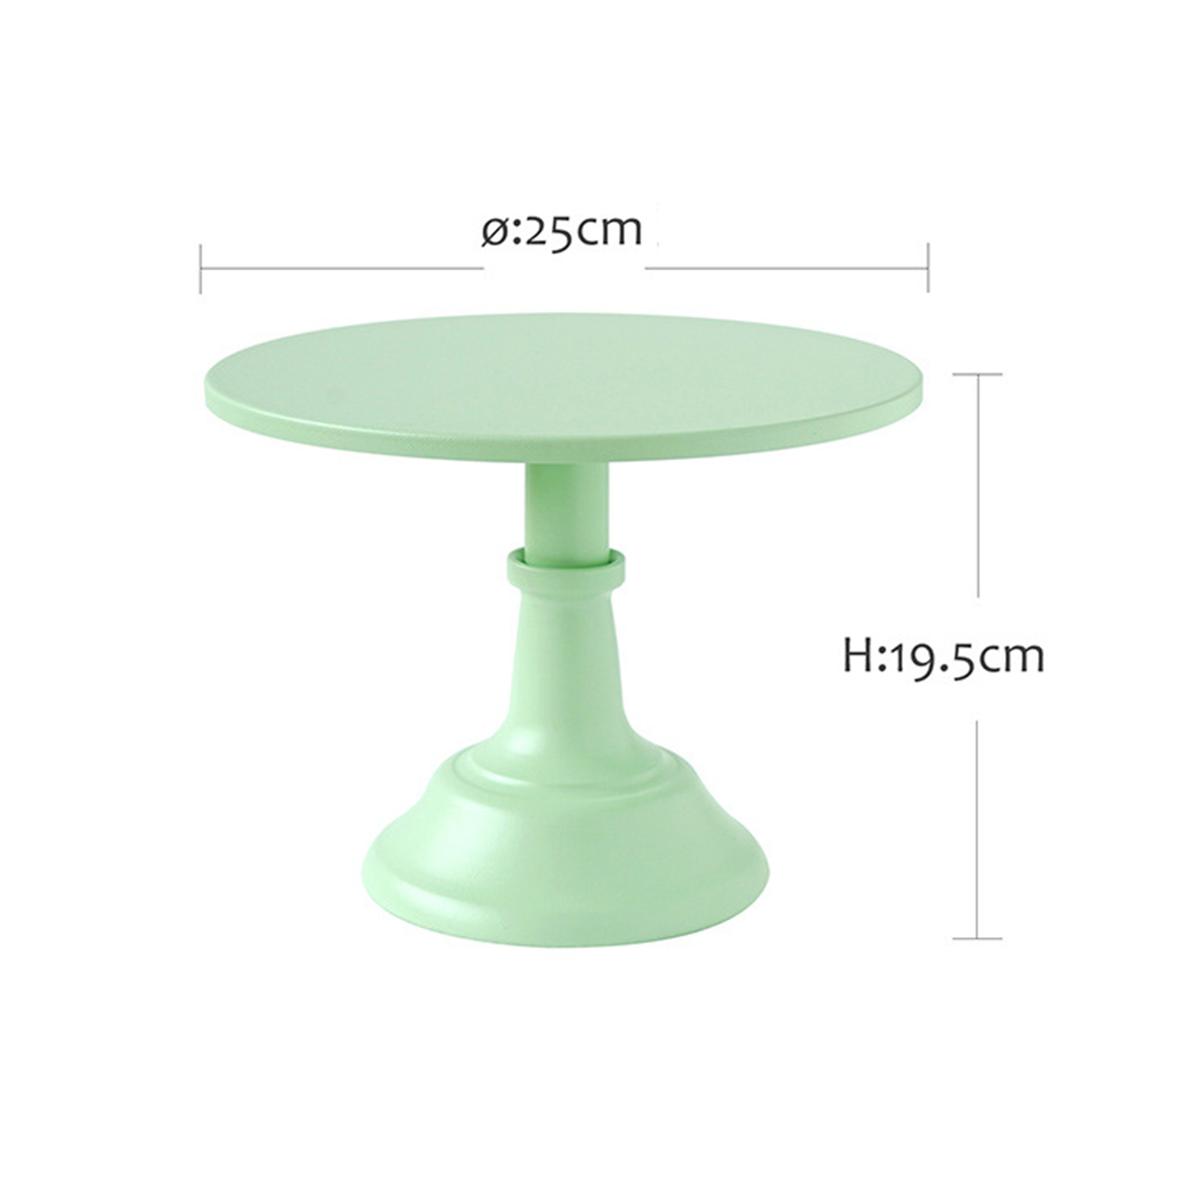 1012-Inch-Iron-Green-Round-Cake-Stand-Pedestal-Dessert-Holder-Wedding-Party-Decorations-1476996-9